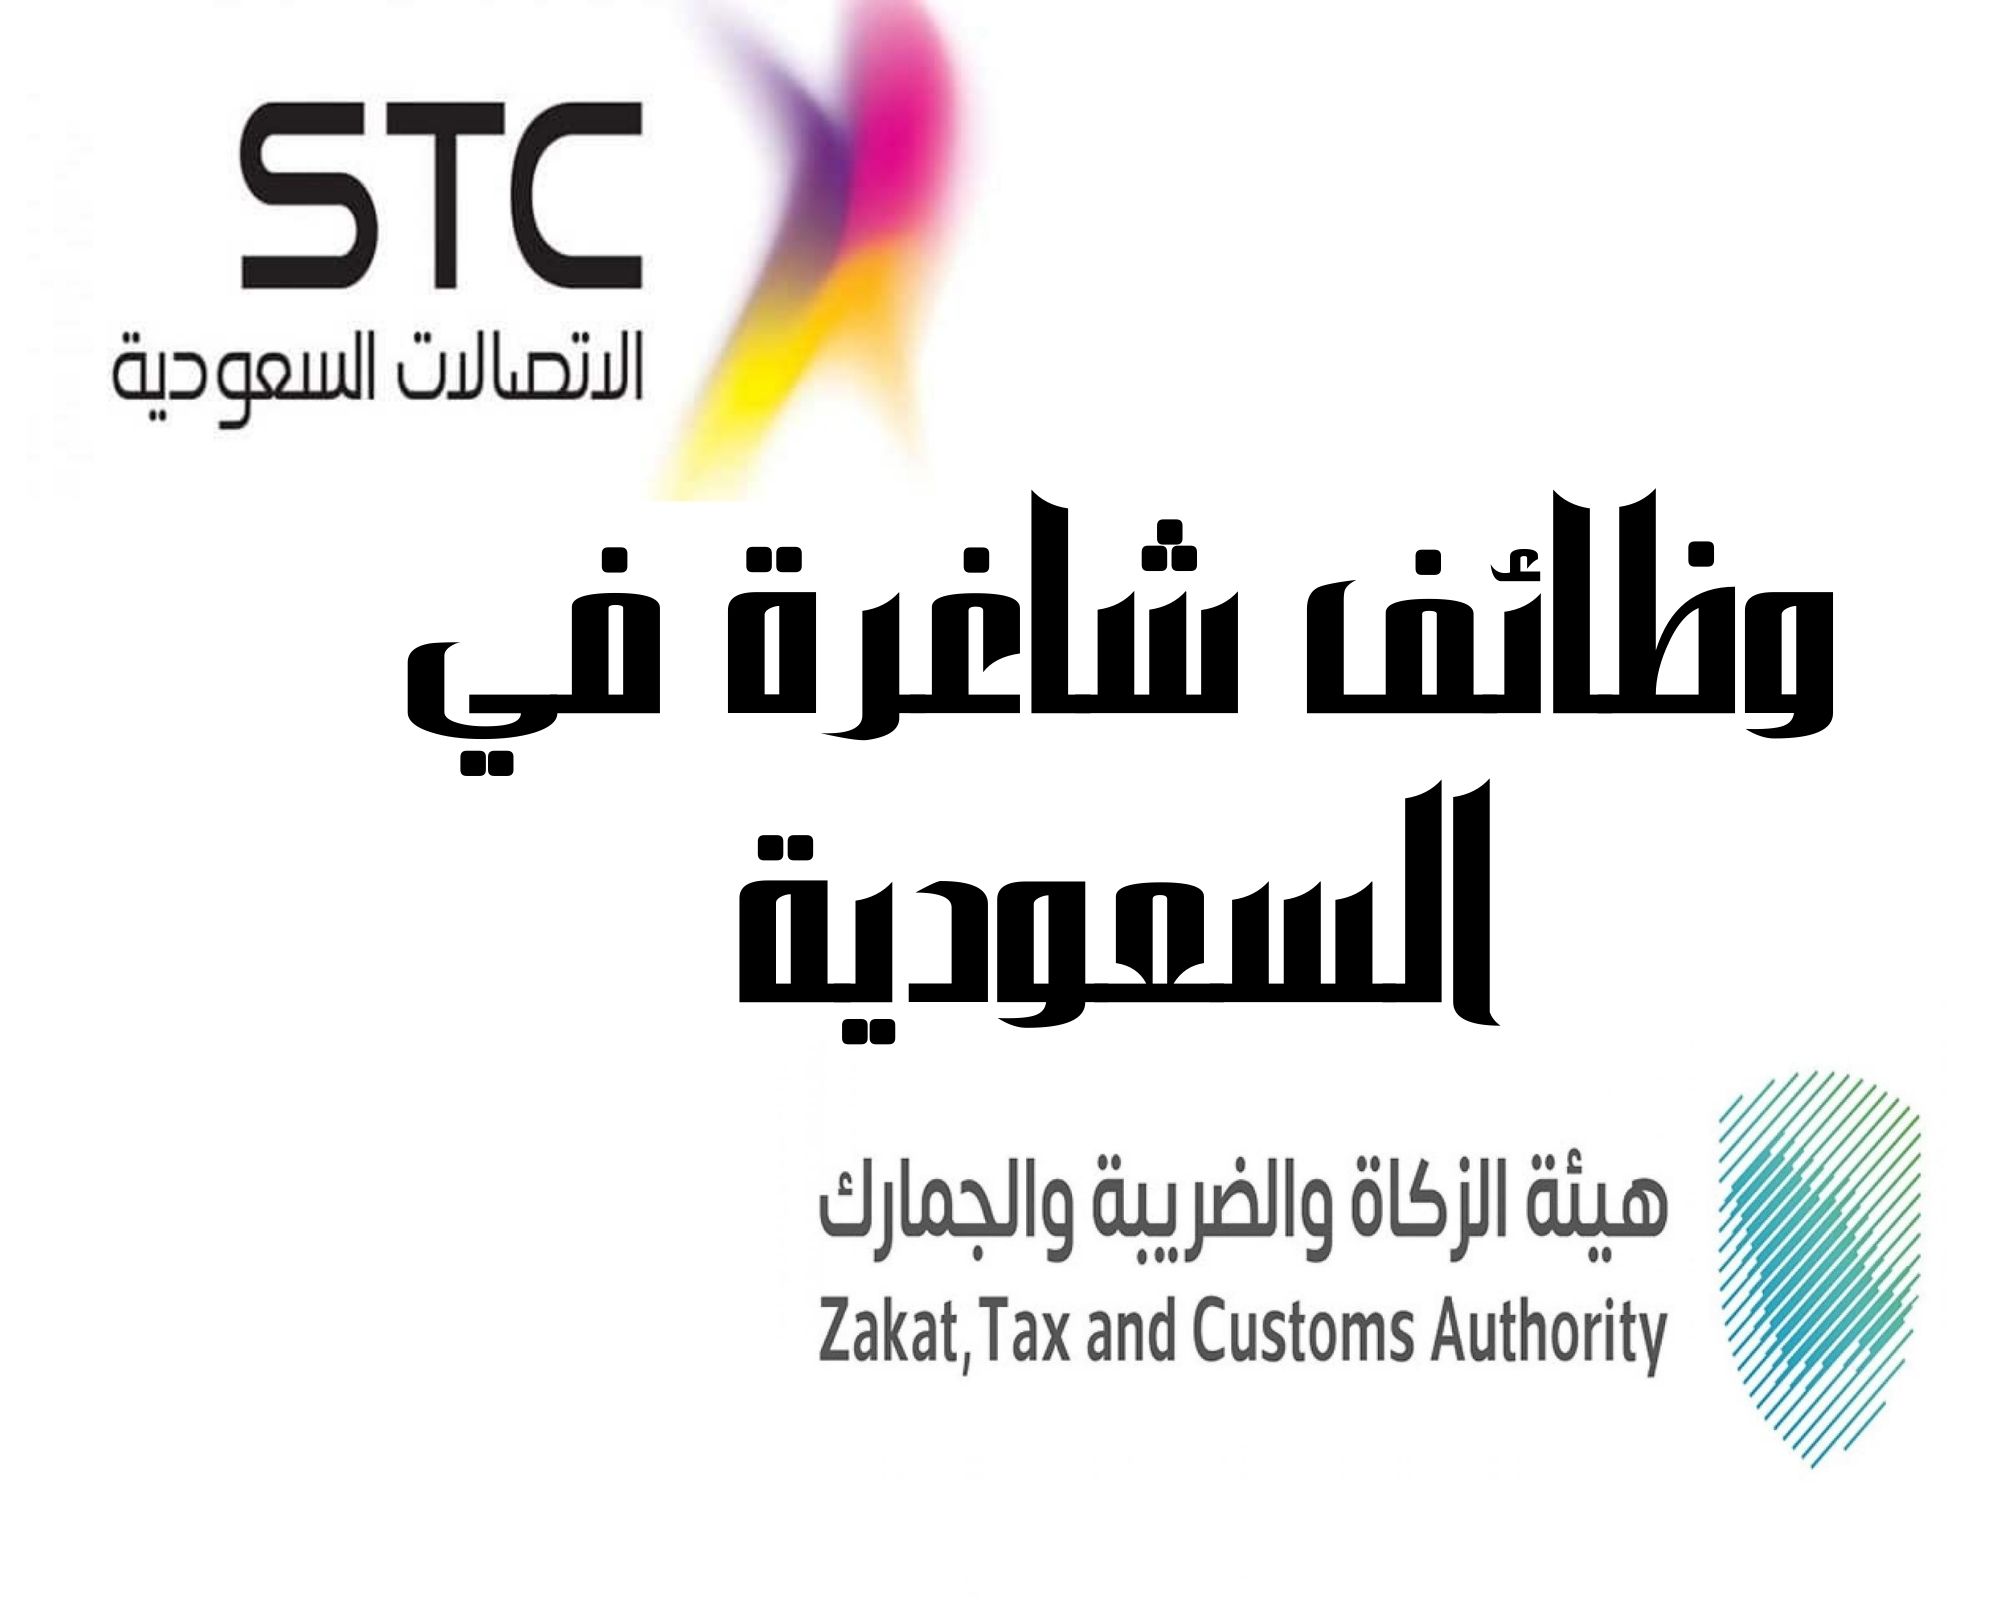 وظائف شاغرة في السعودية في شركة STC وهيئة الزكاة والضريبة والجمارك